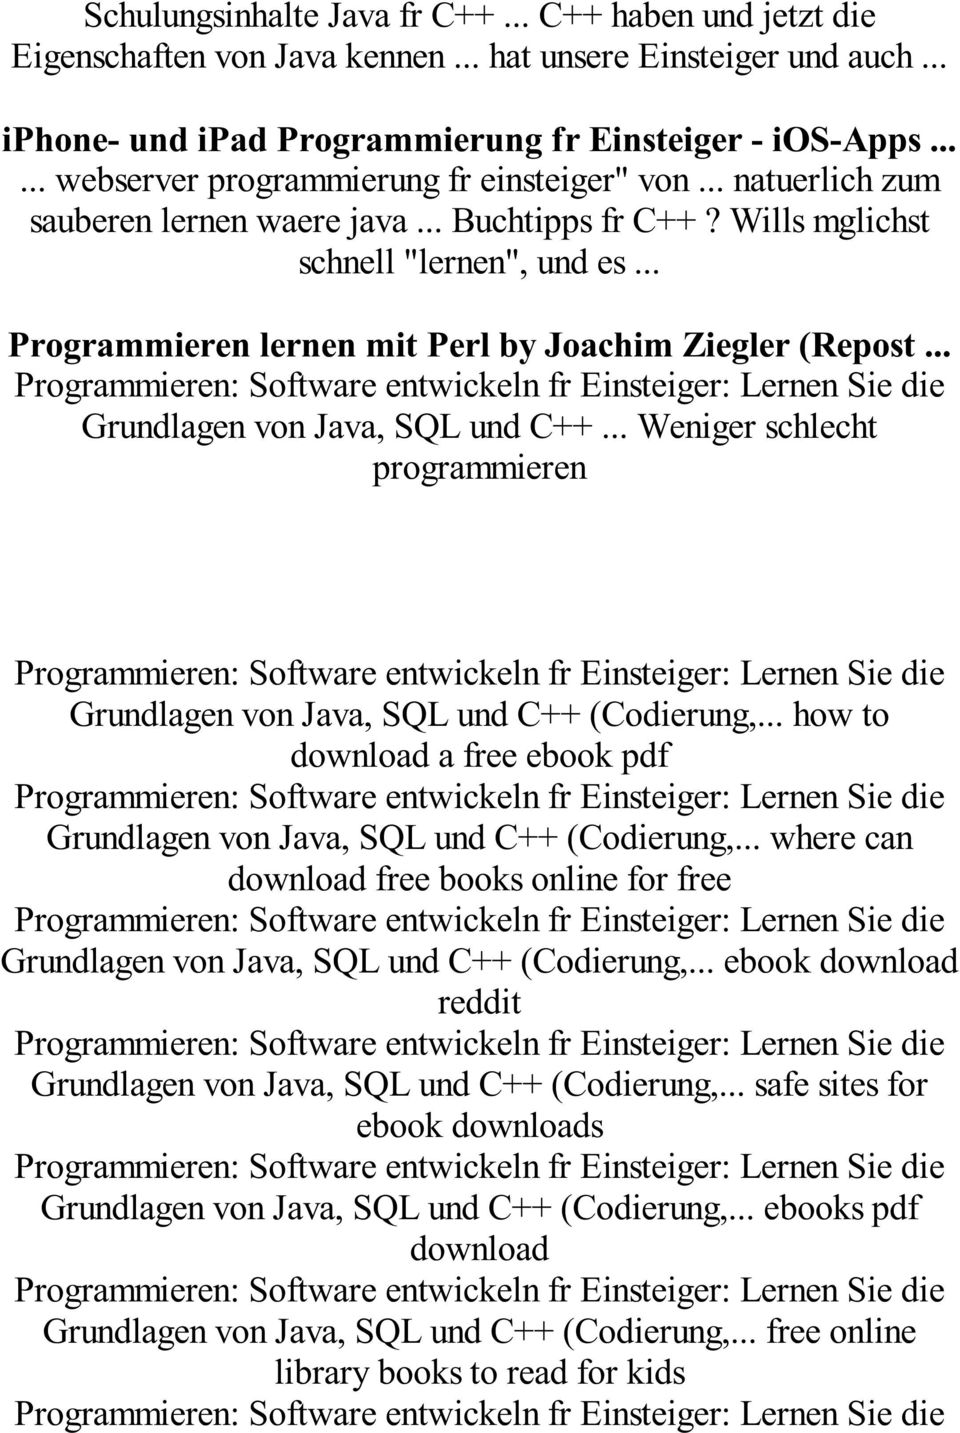 .. Programmieren lernen mit Perl by Joachim Ziegler (Repost... Grundlagen von Java, SQL und C++... Weniger schlecht programmieren Grundlagen von Java, SQL und C++ (Codierung,.